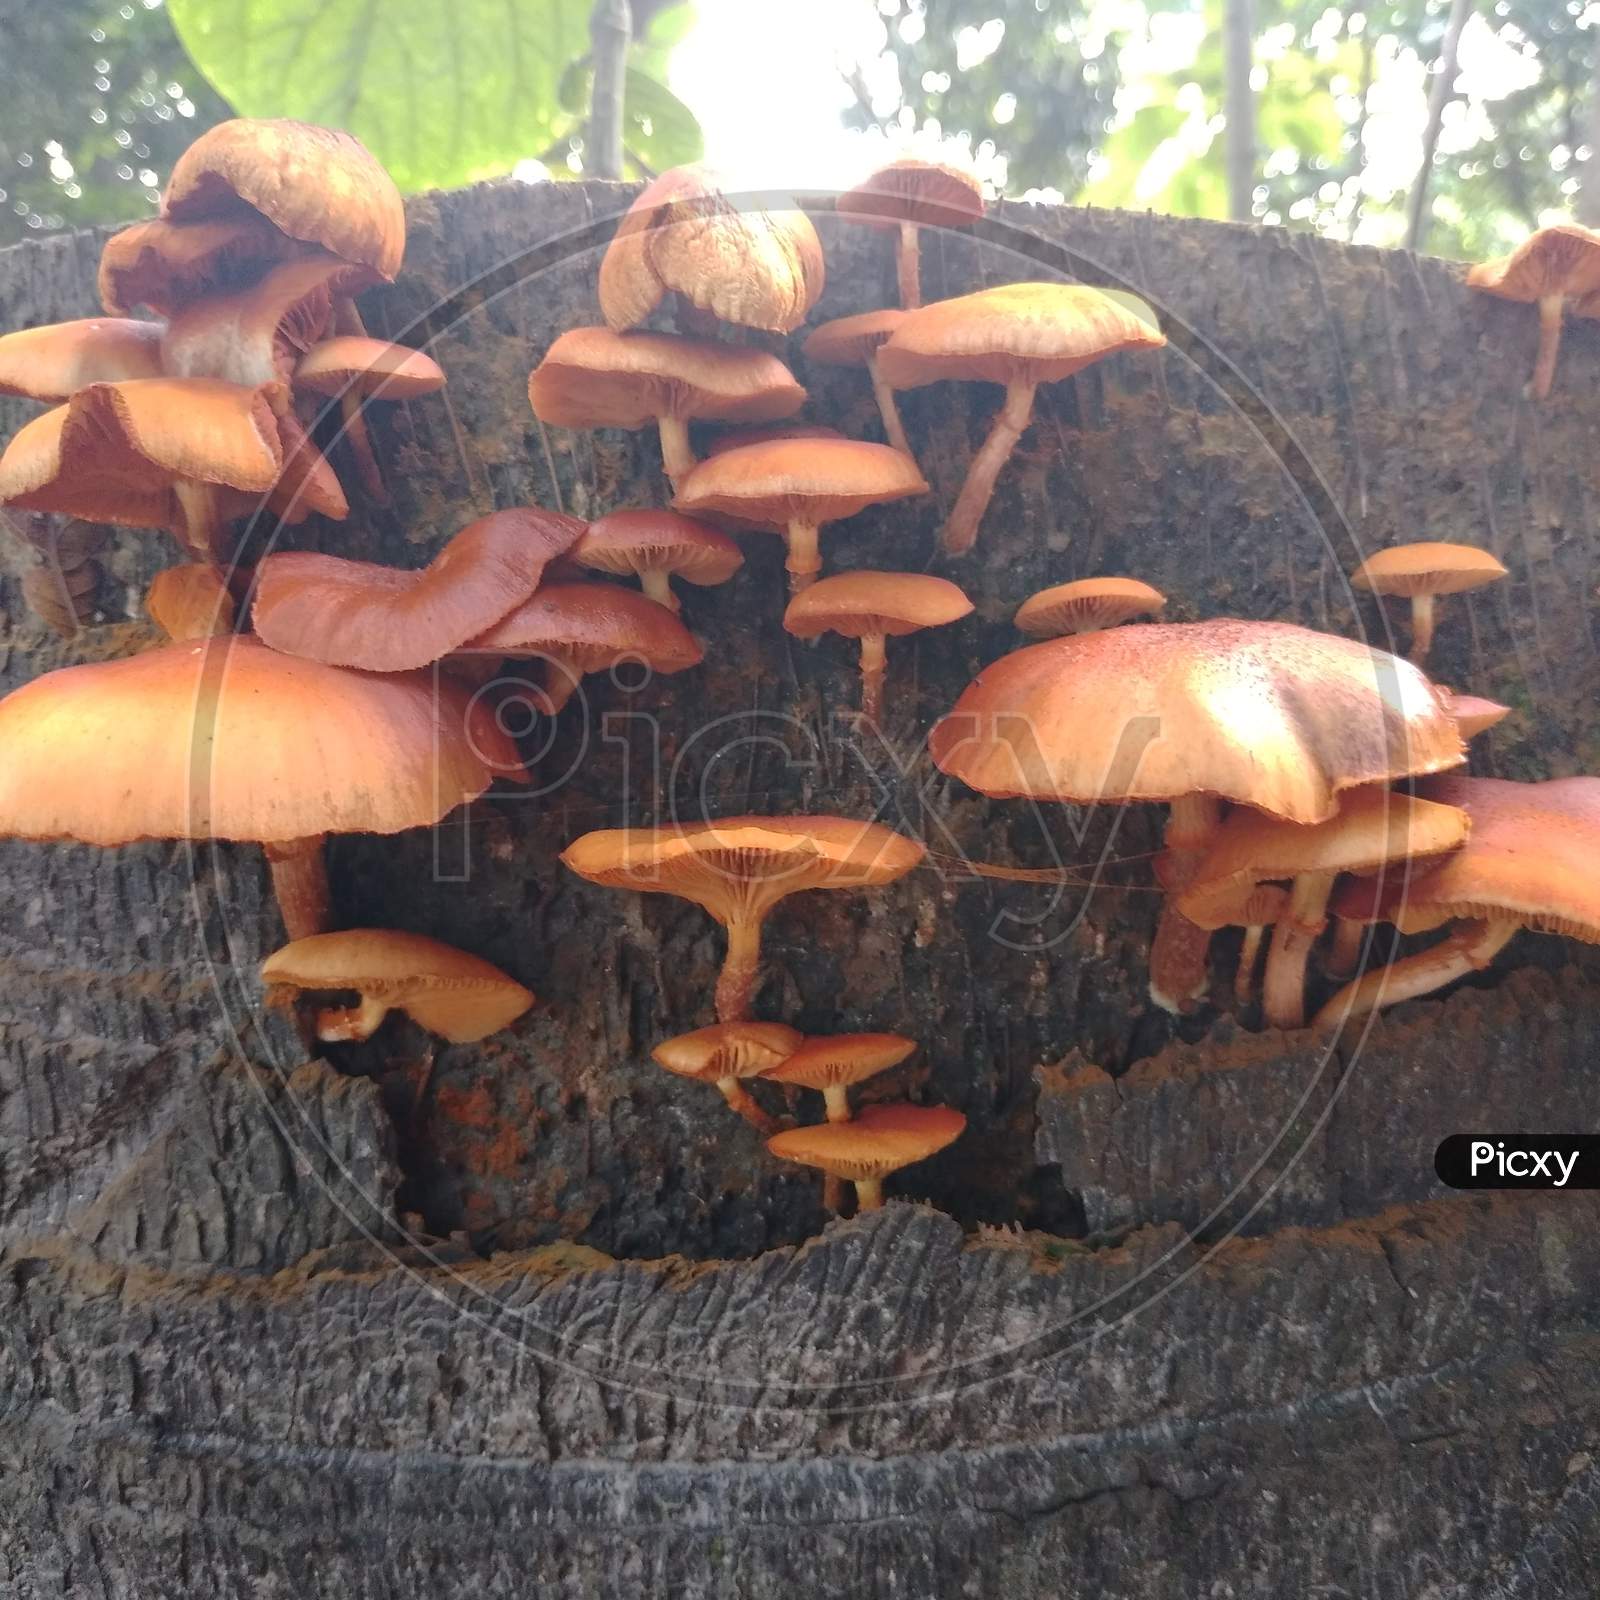 This is wonderful Mushroom